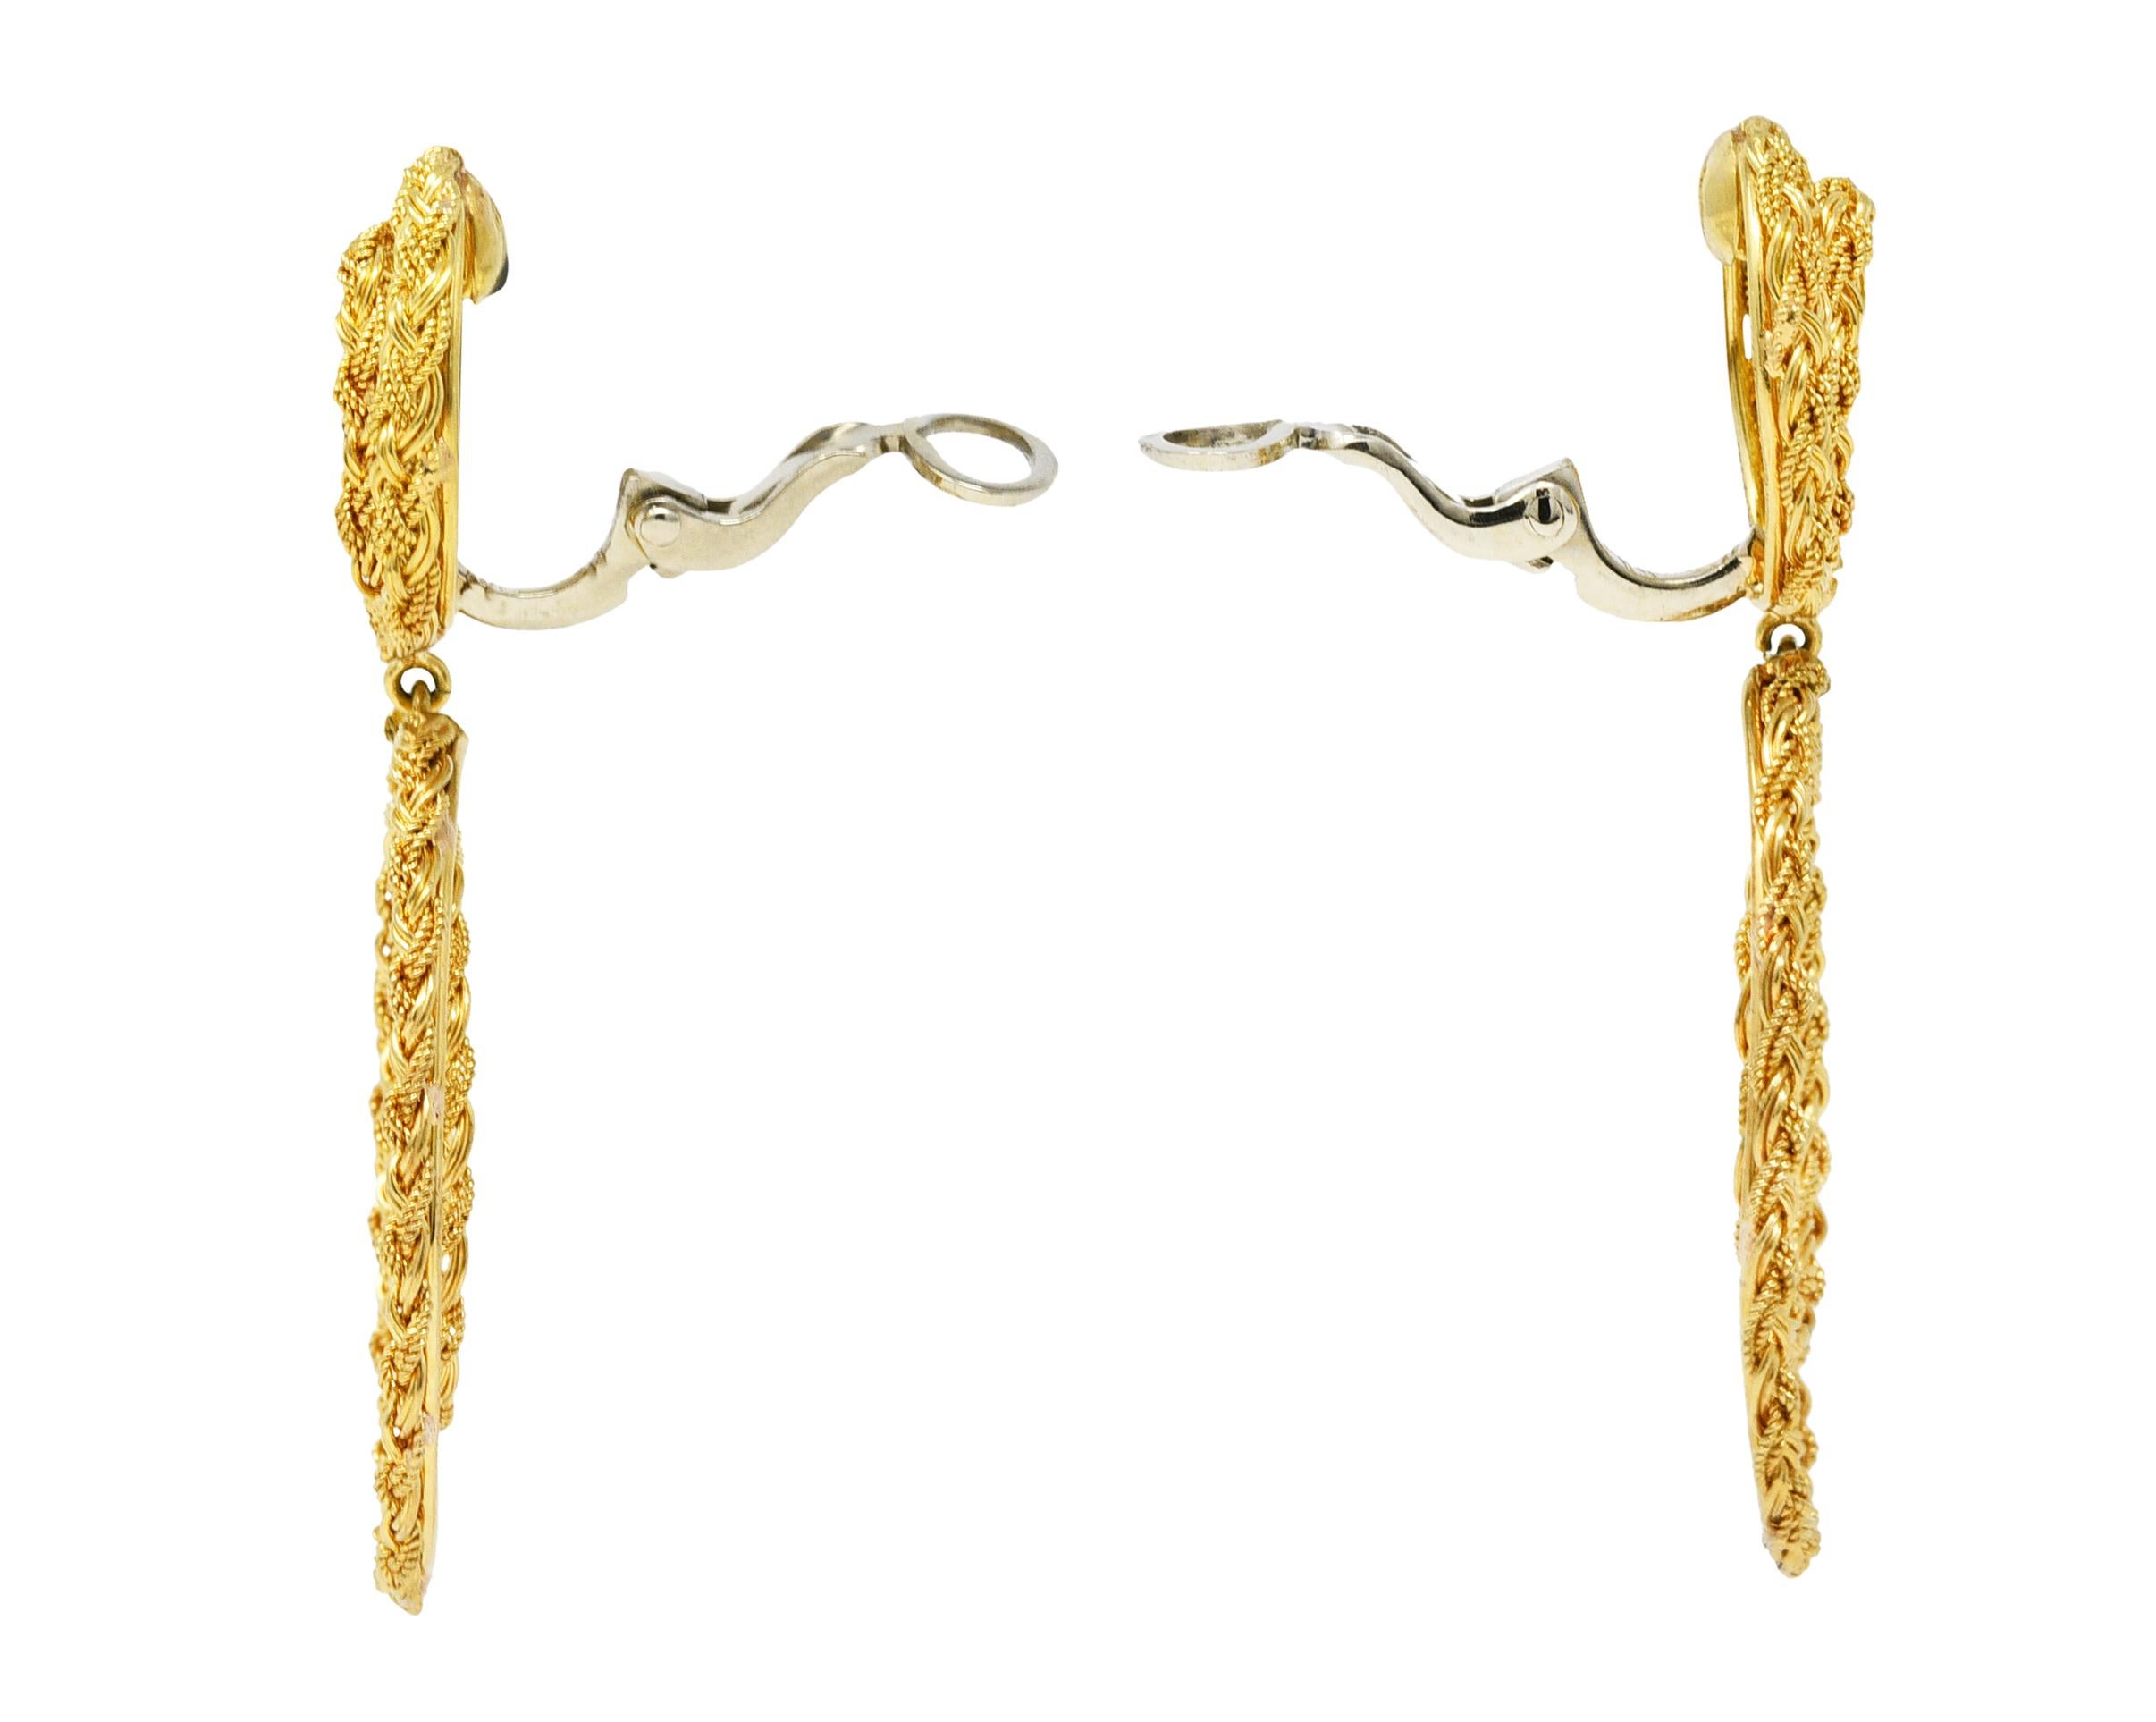 Contemporary 1980's Vintage 18 Karat Yellow Gold Braided Doorknocker Ear-Clip Earrings